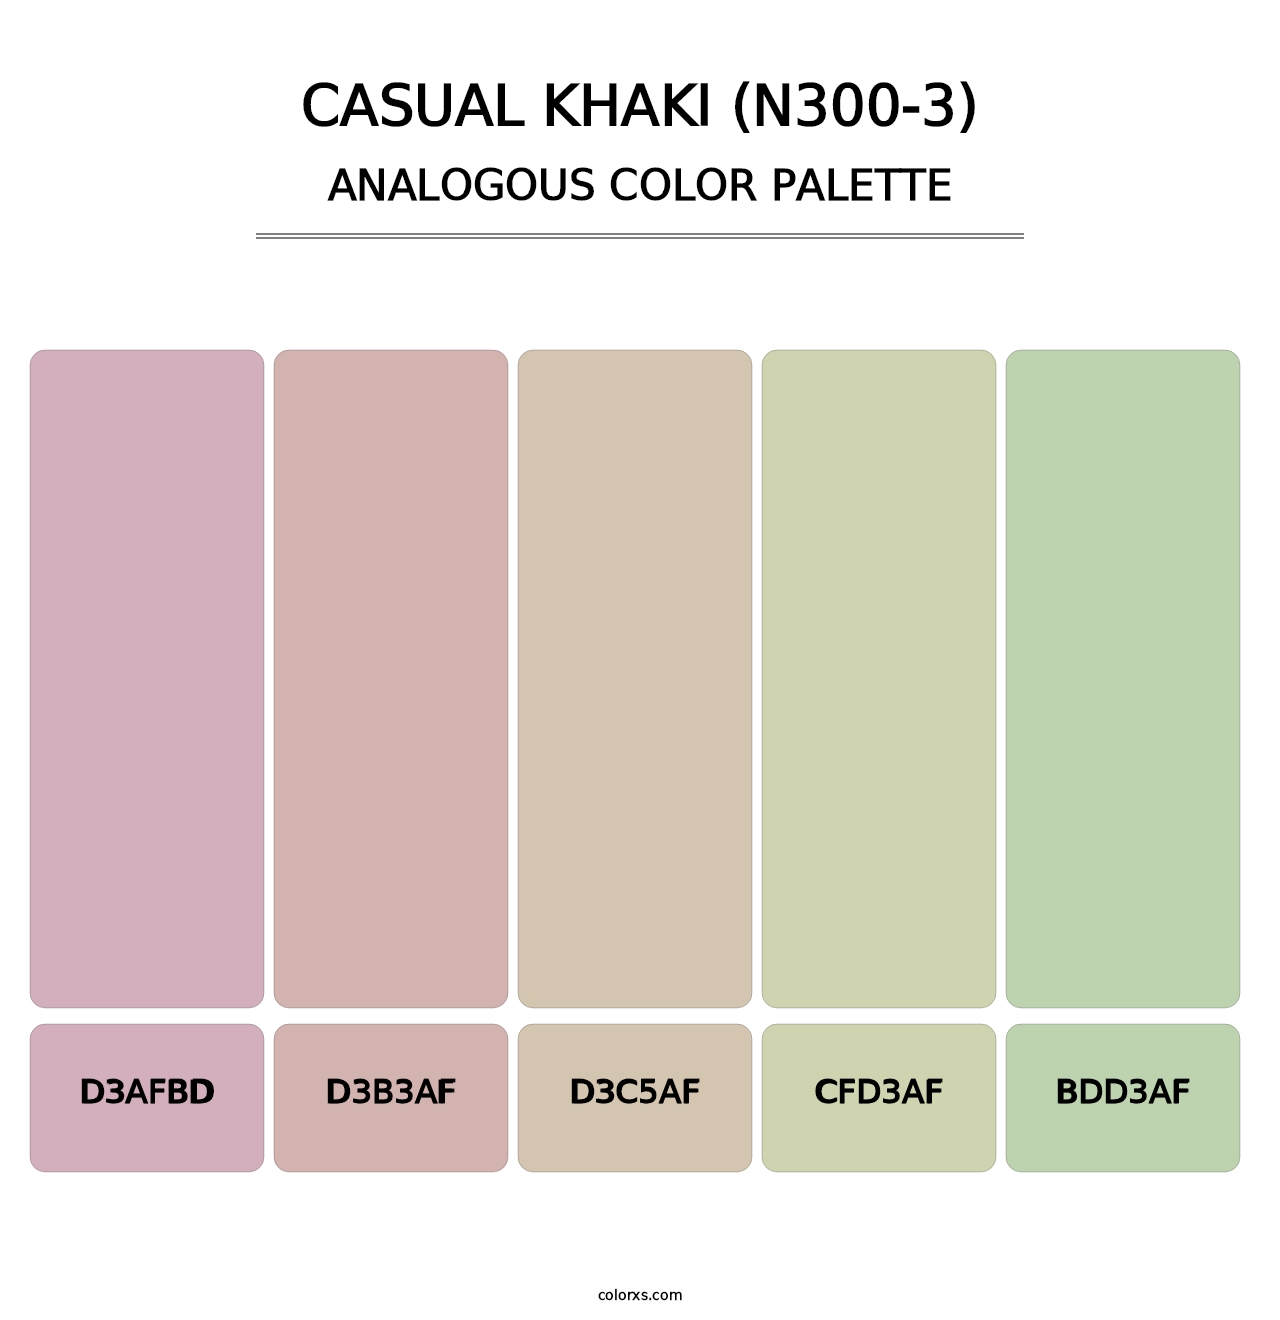 Casual Khaki (N300-3) - Analogous Color Palette